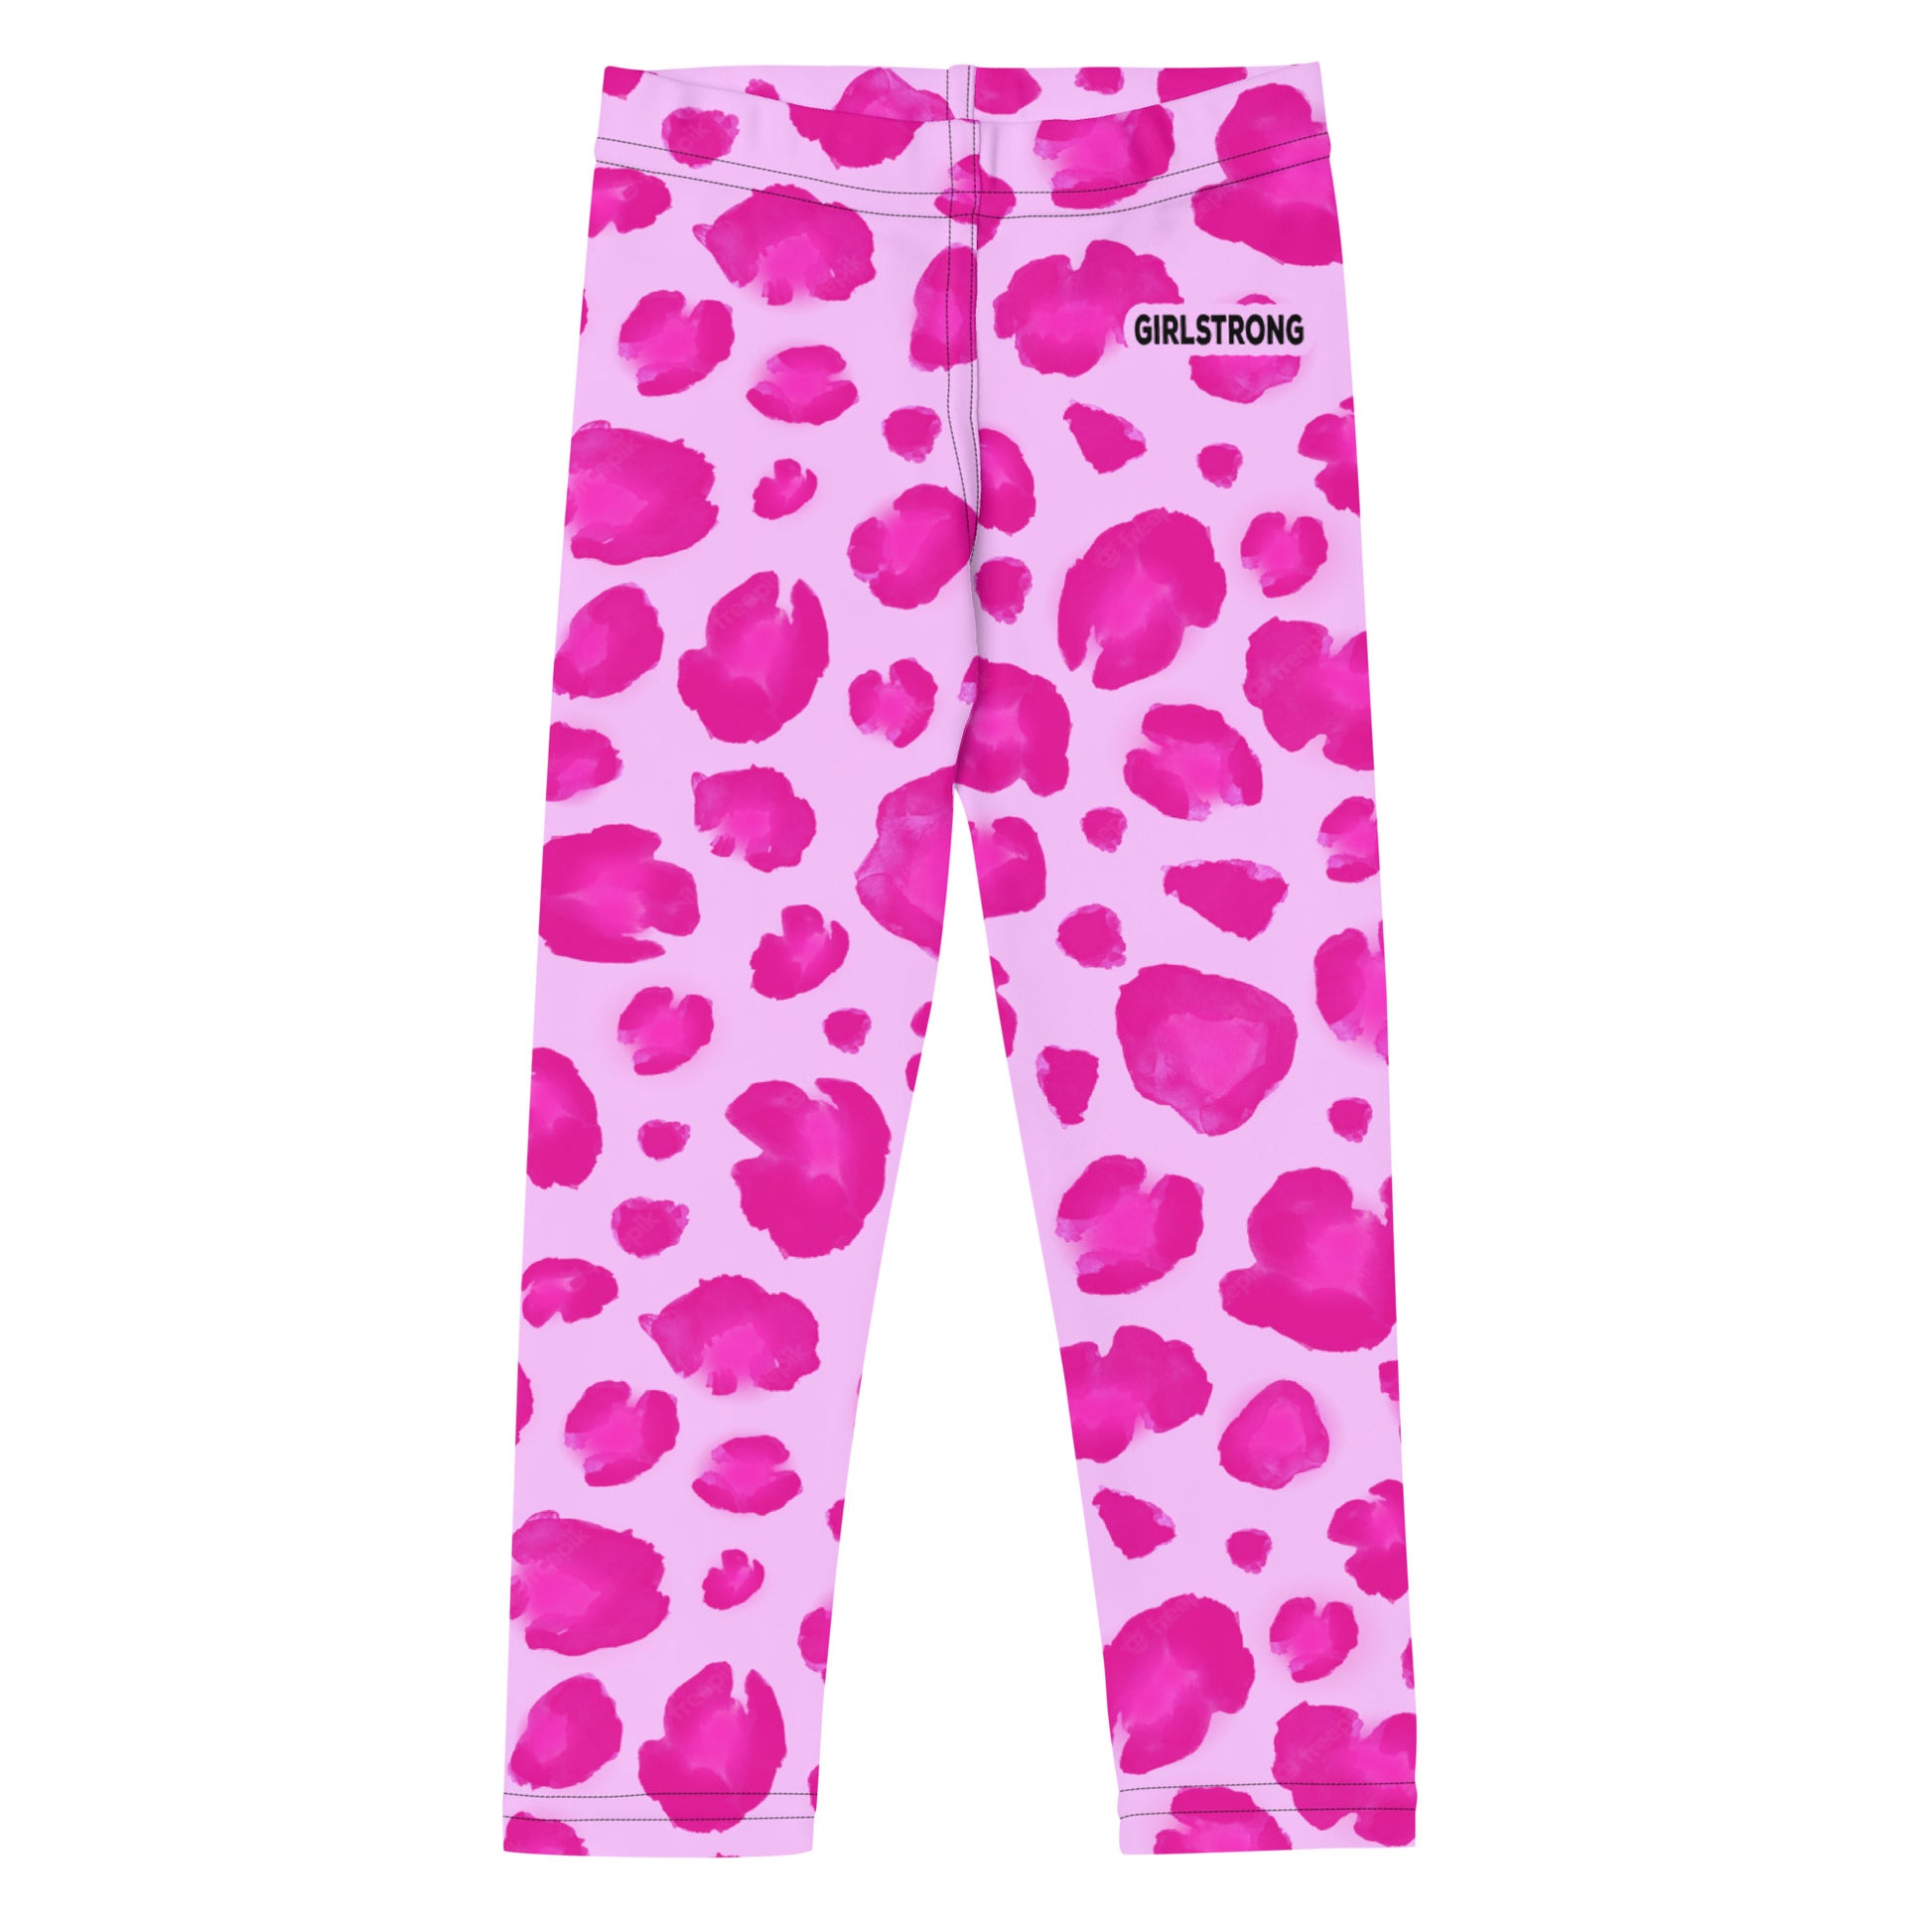 High waist women's leopard print leggings- – GIRLSTRONG INC